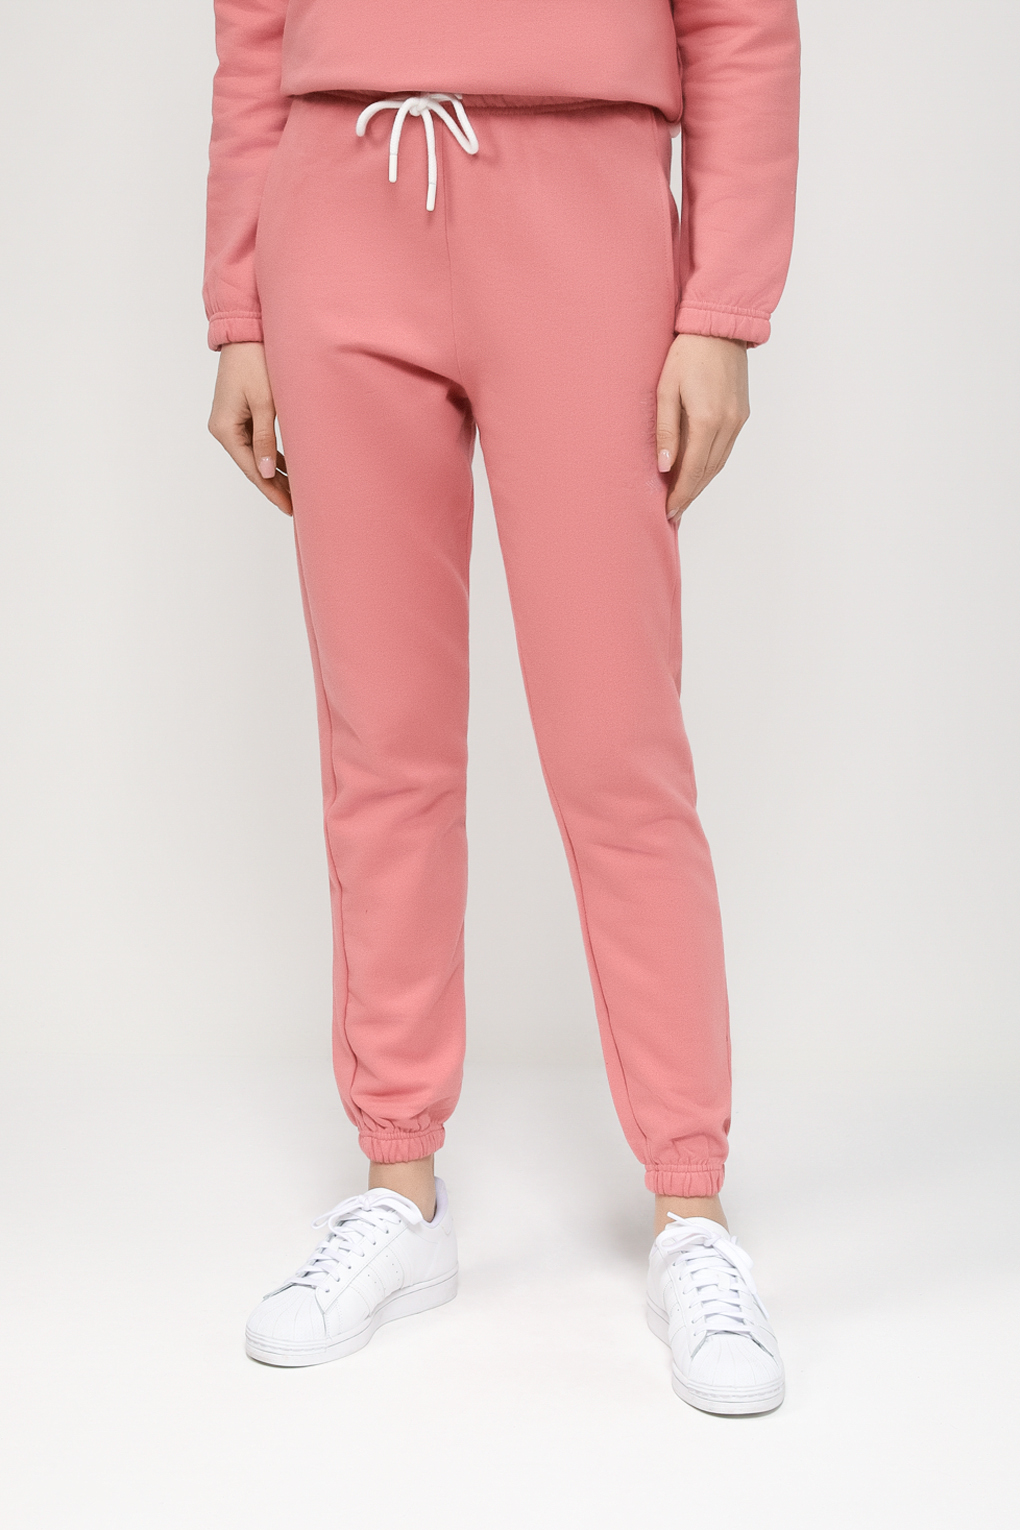 Спортивные брюки женские Massana P733201 розовые S